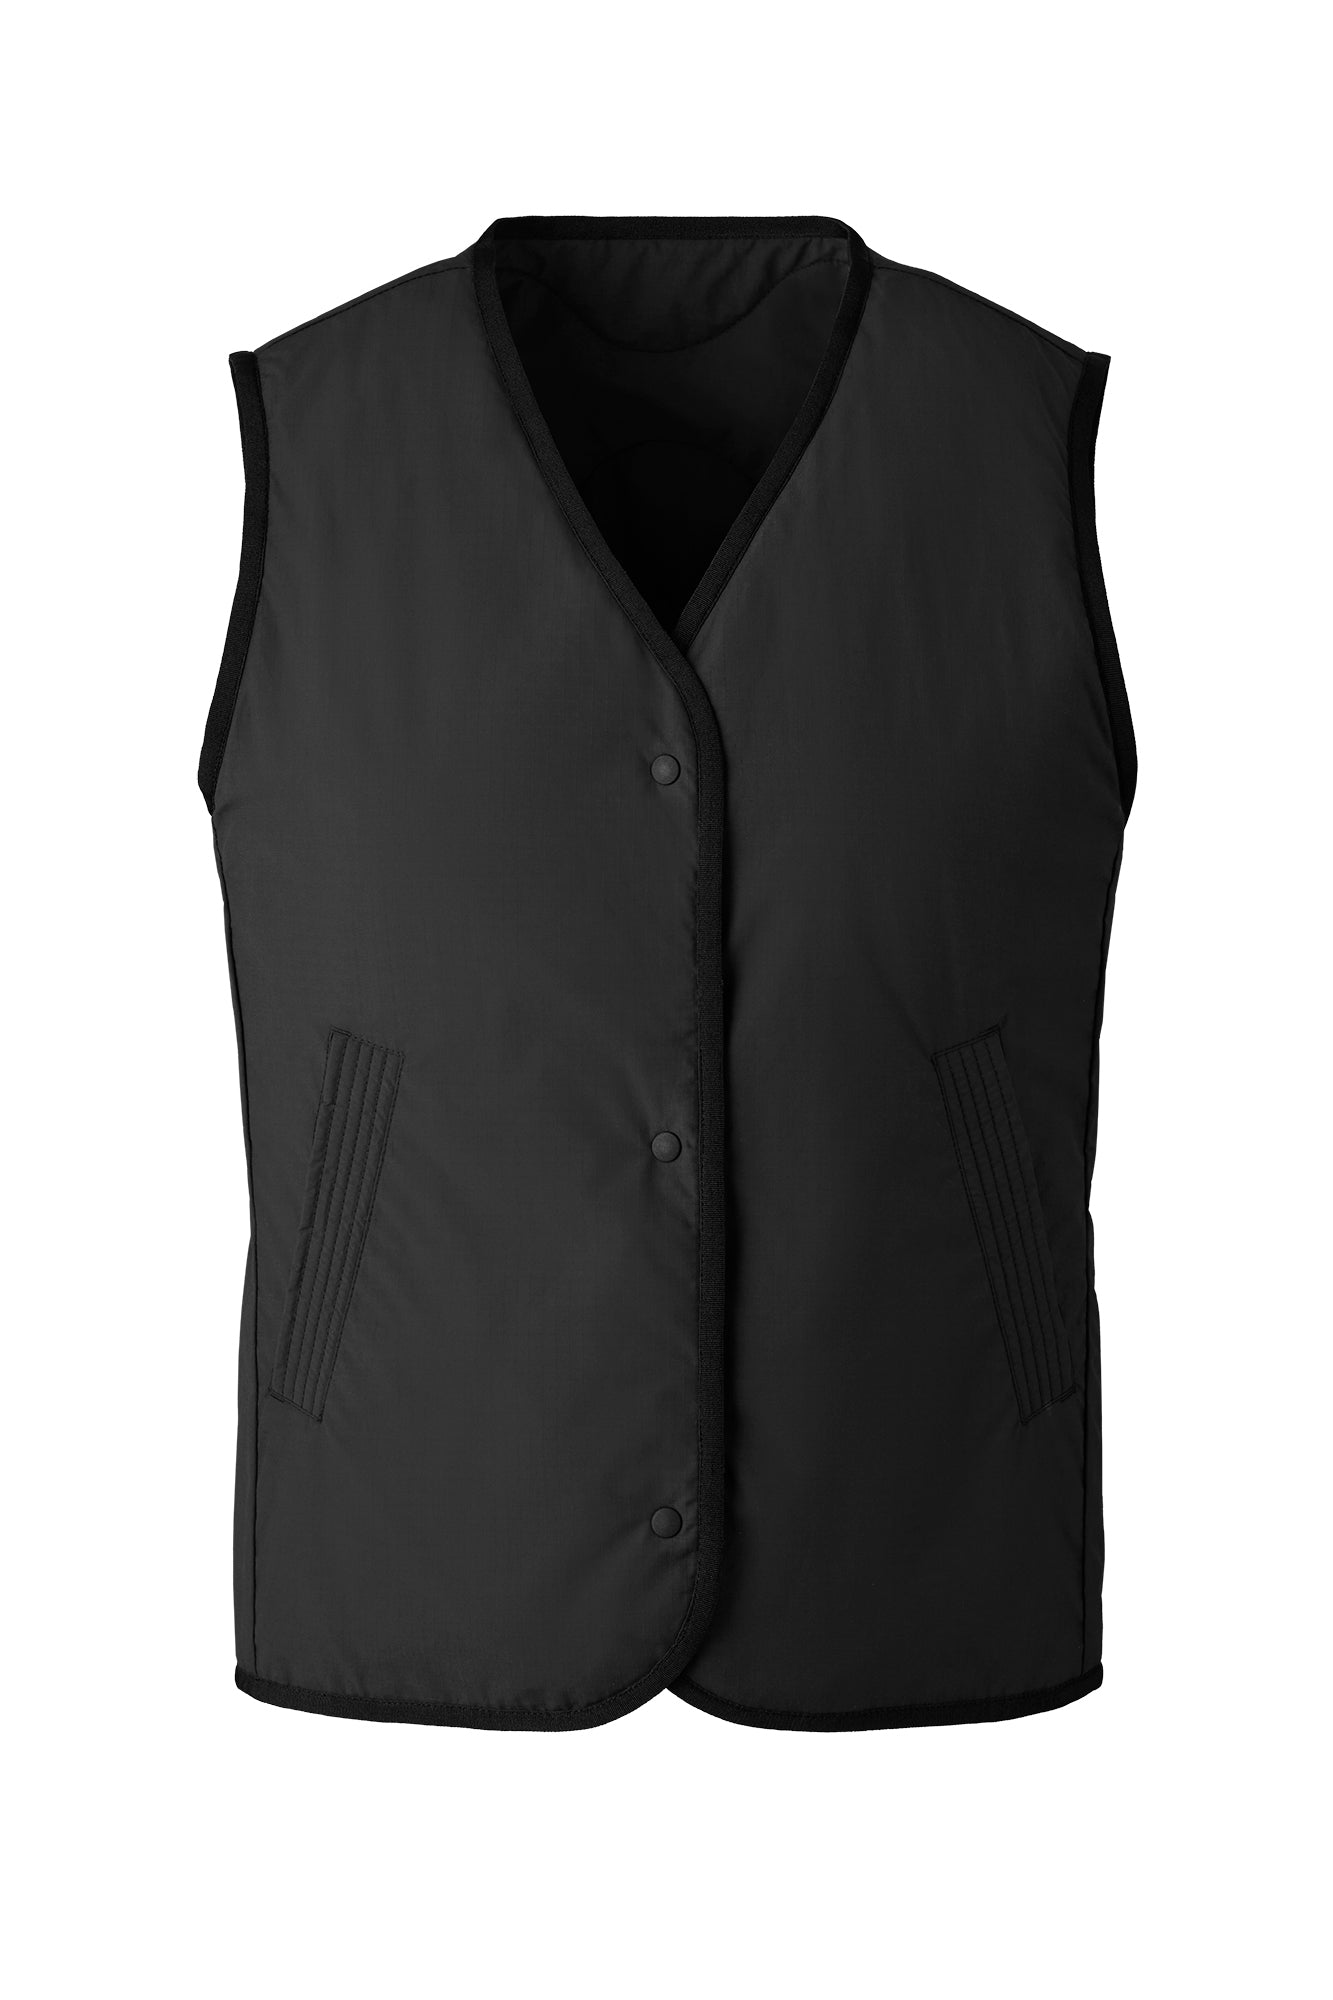 Annex Liner Vest - Black